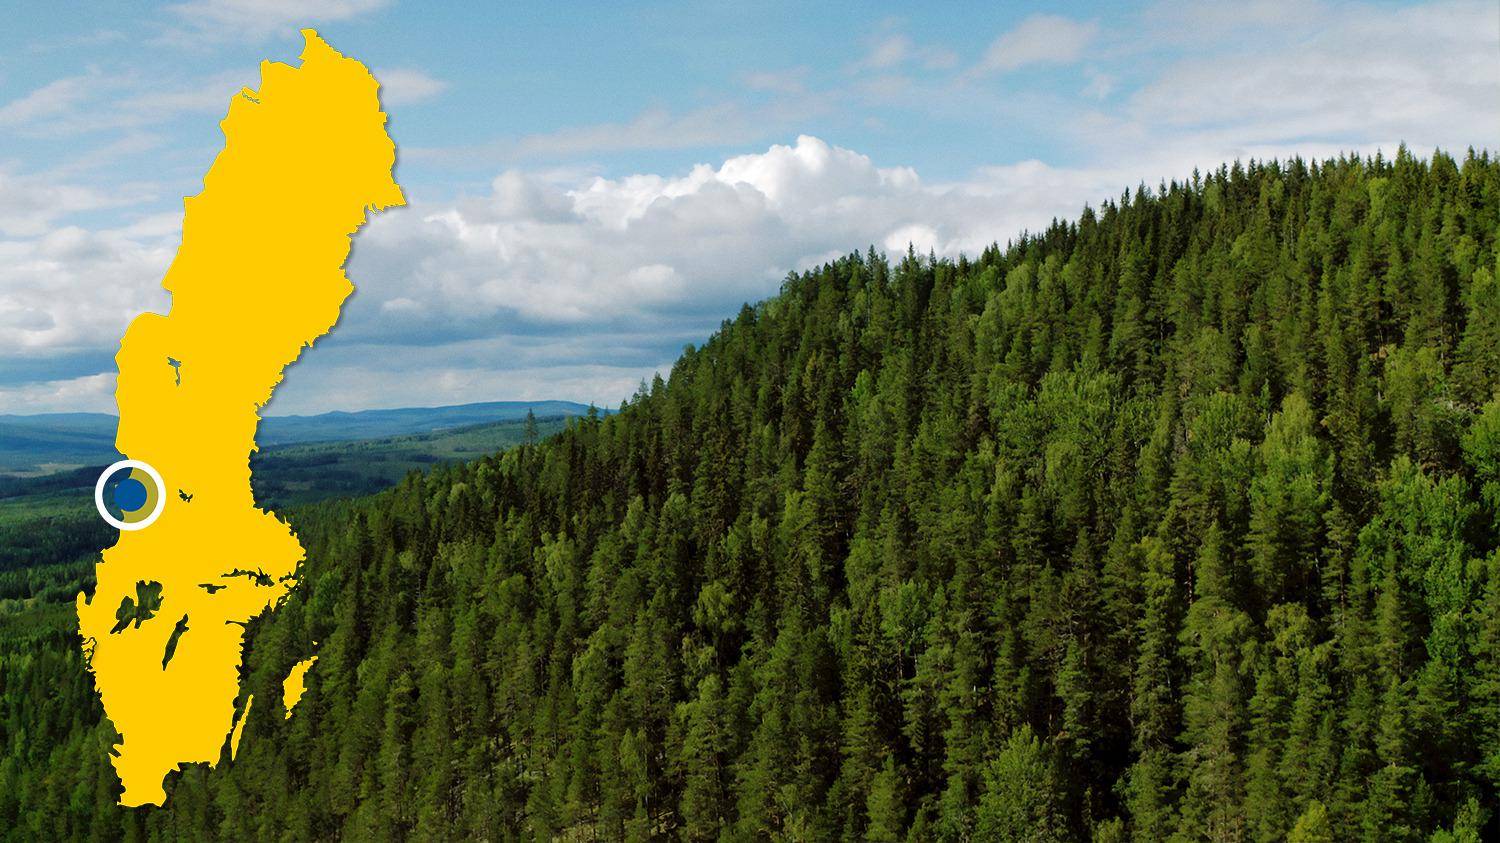 Vue sur une forêt de conifères. Sur la photo, il y a une carte jaune de la Suède avec un point bleu qui indique l'emplacement de Höljes.